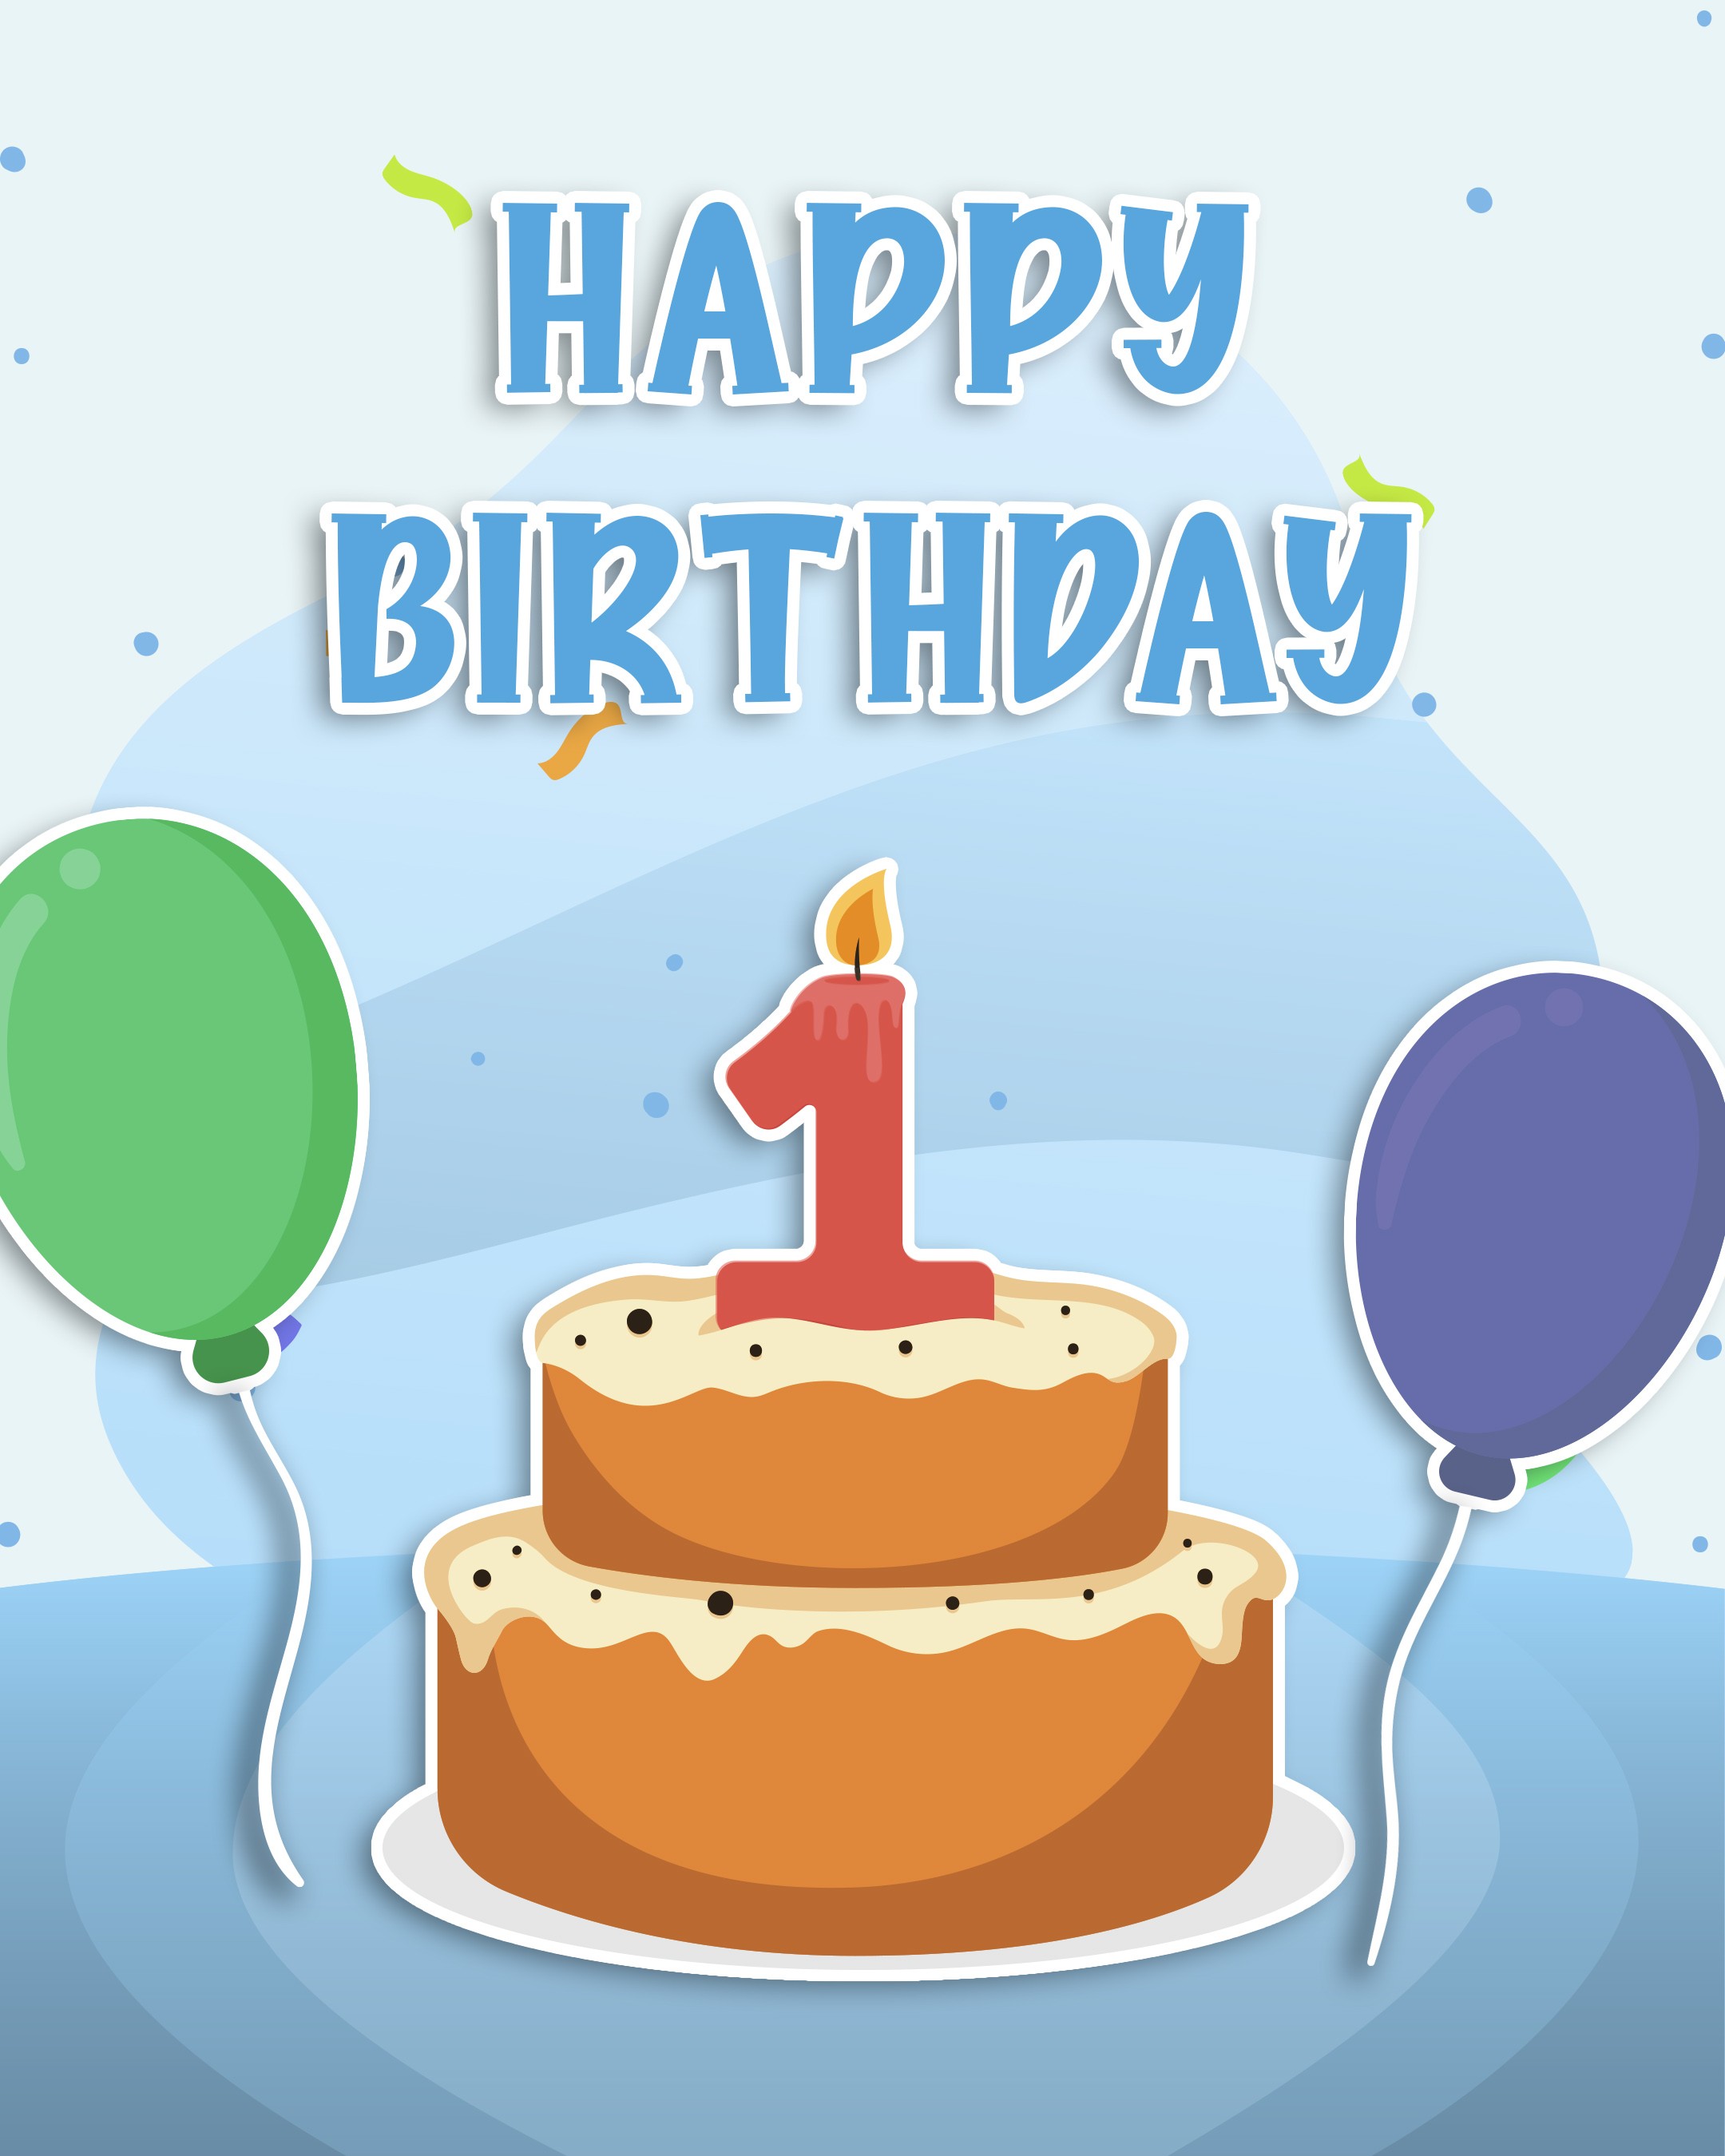 Free 1st Year Happy Birthday Image With Cake - birthdayimg.com